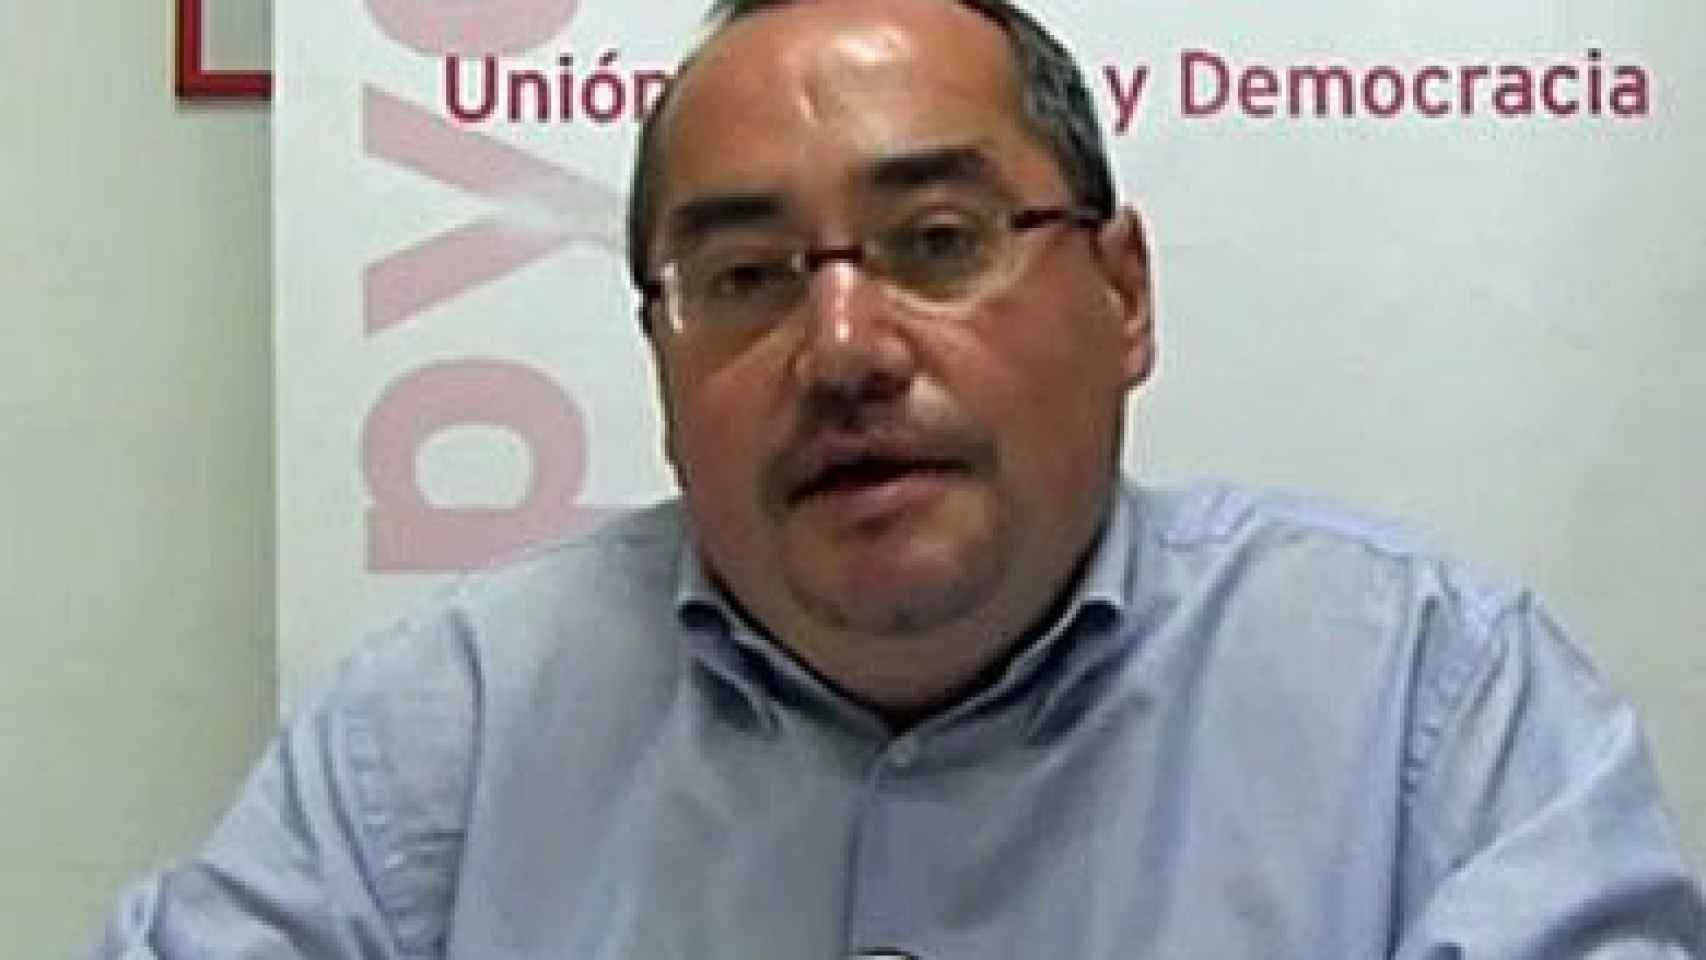 El nuevo coordinador del Consejo Territorial de UPyD en Cataluña, Miguel del Amo